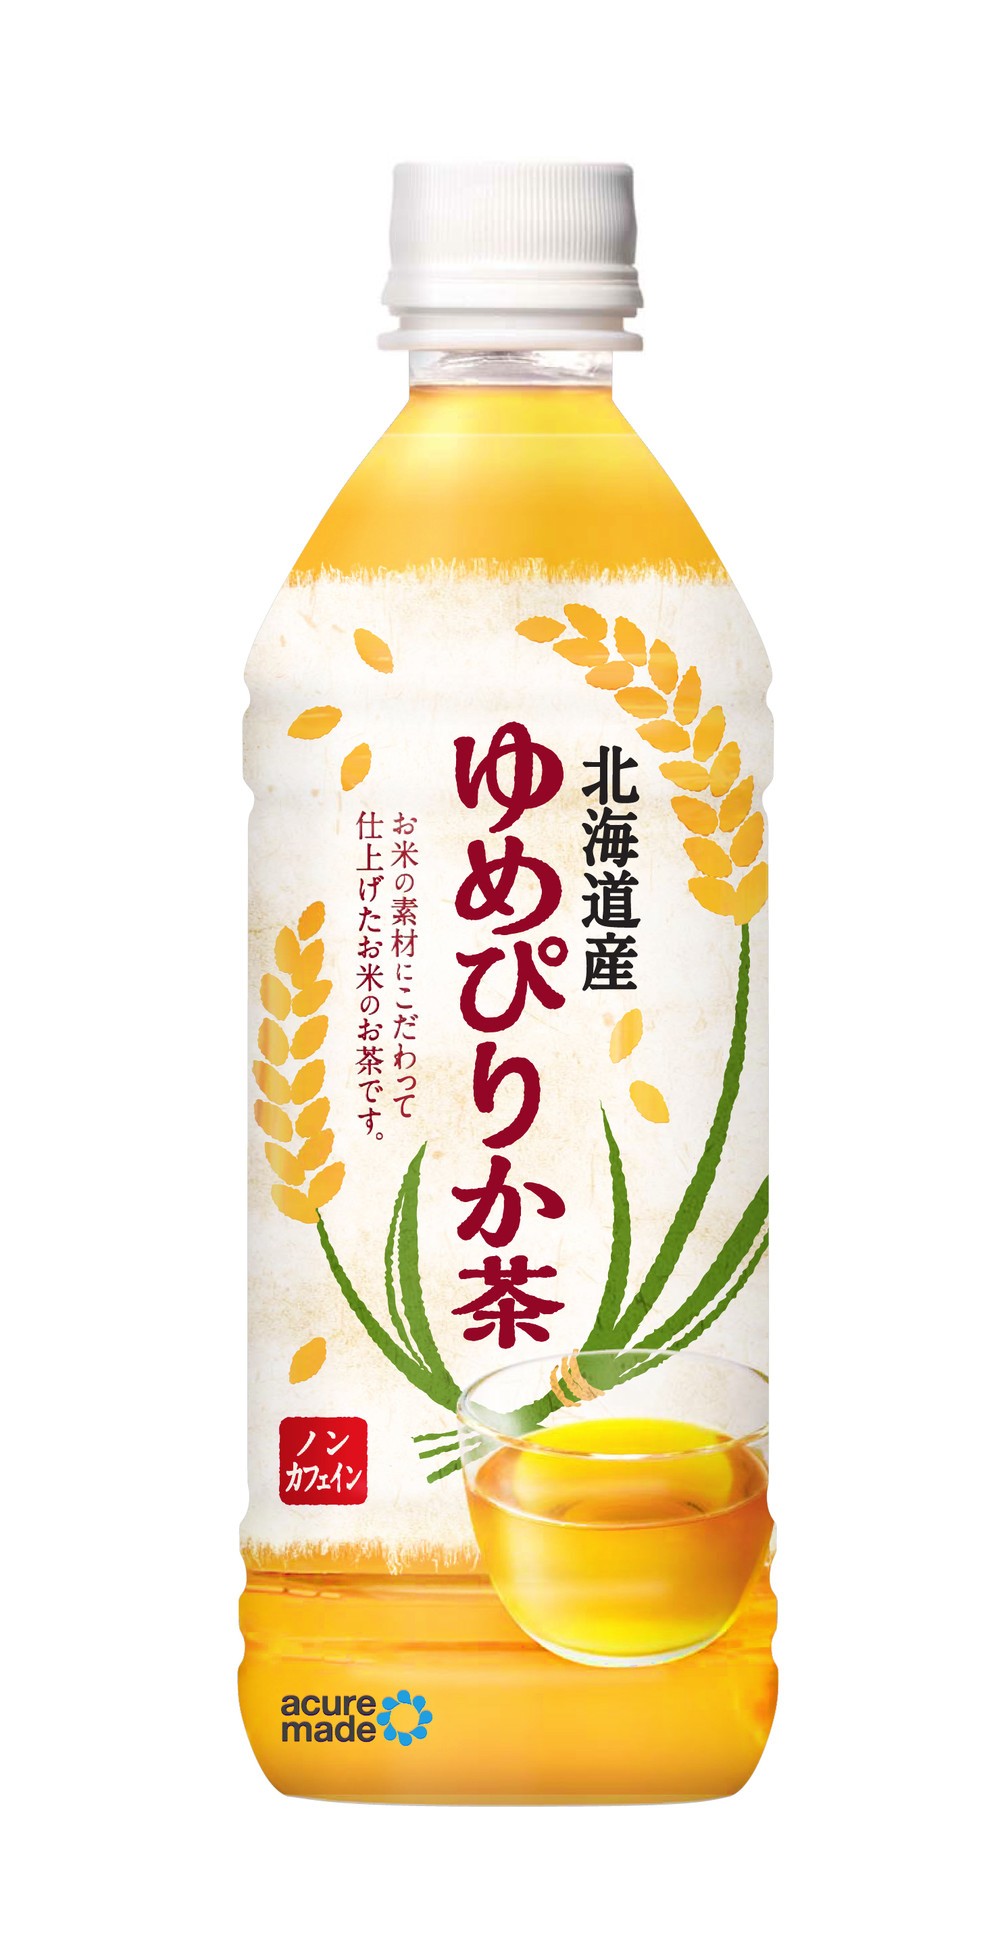 北海道新幹線開業に合わせJR東グループ会社から、道産原料つかった「ゆめぴりか茶」と「贅沢バニラミルク」